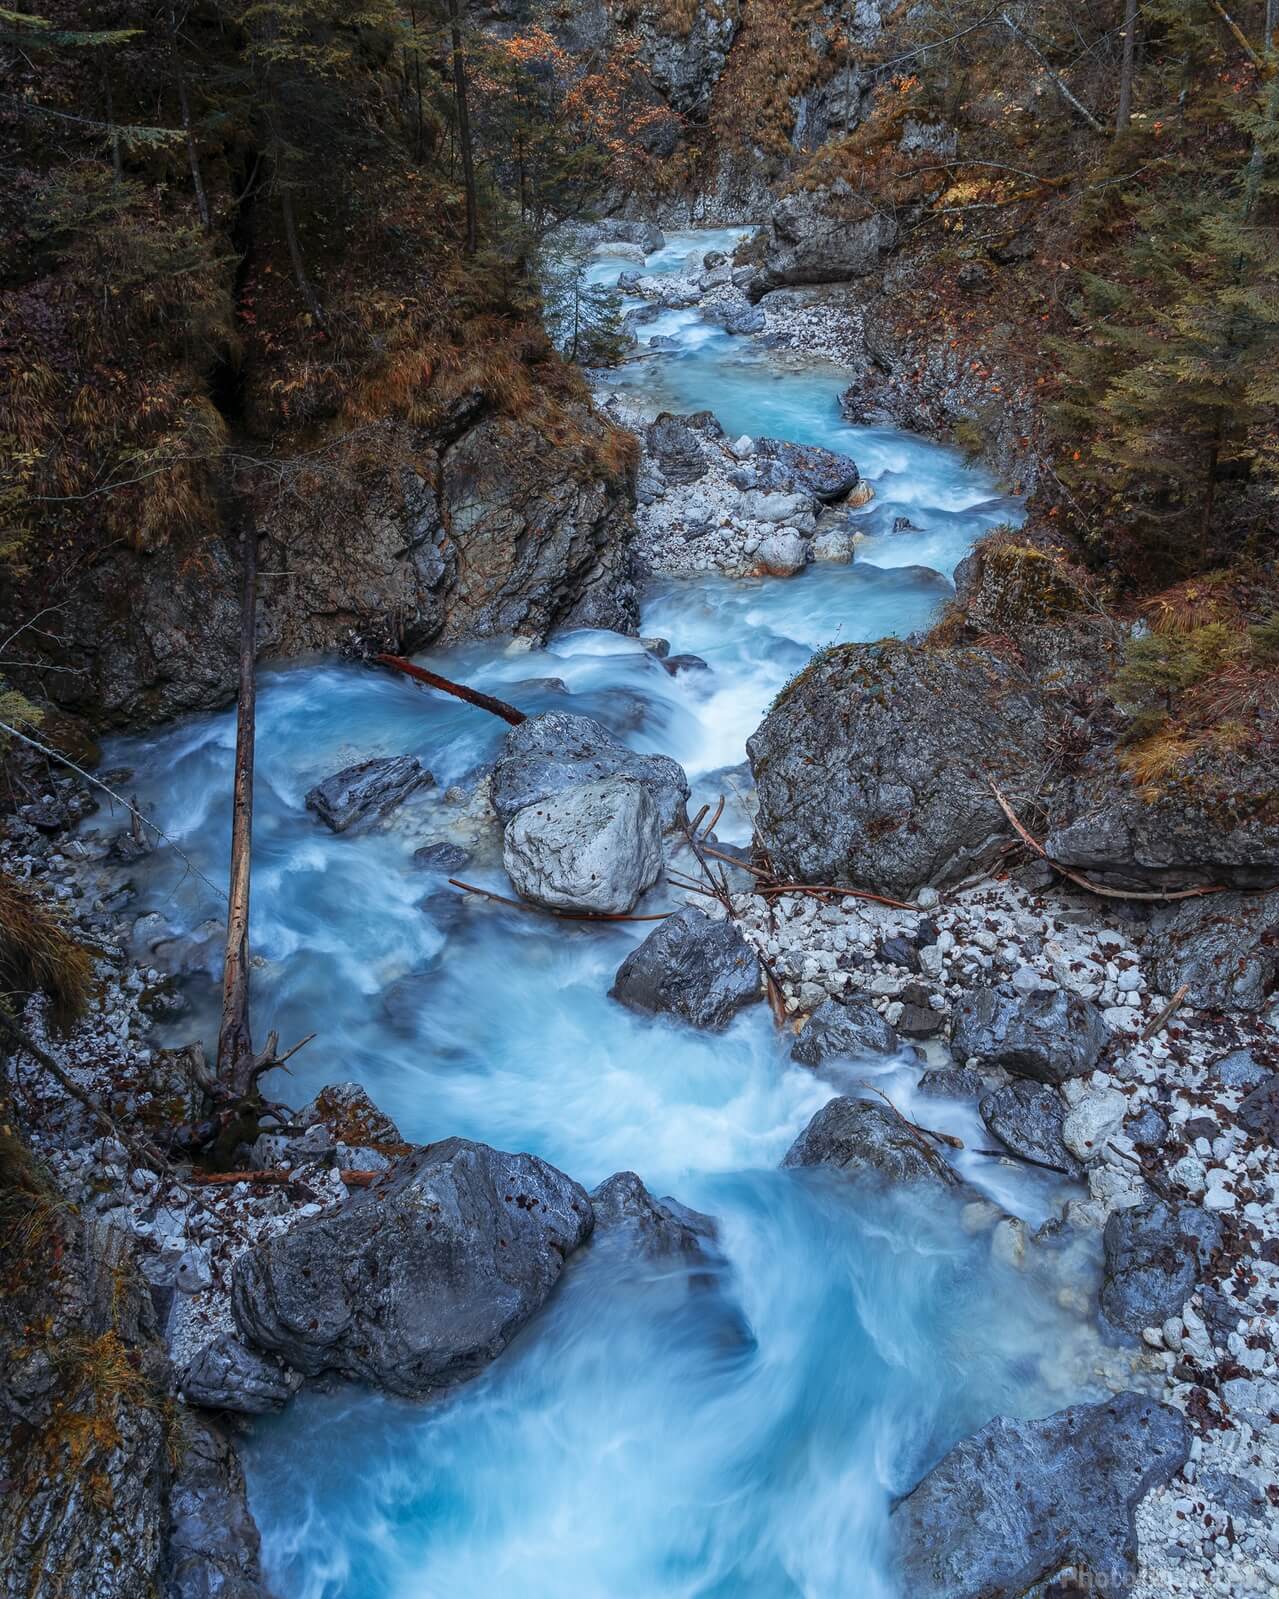 Image of Martuljek River by Alan Bučar Vukšić